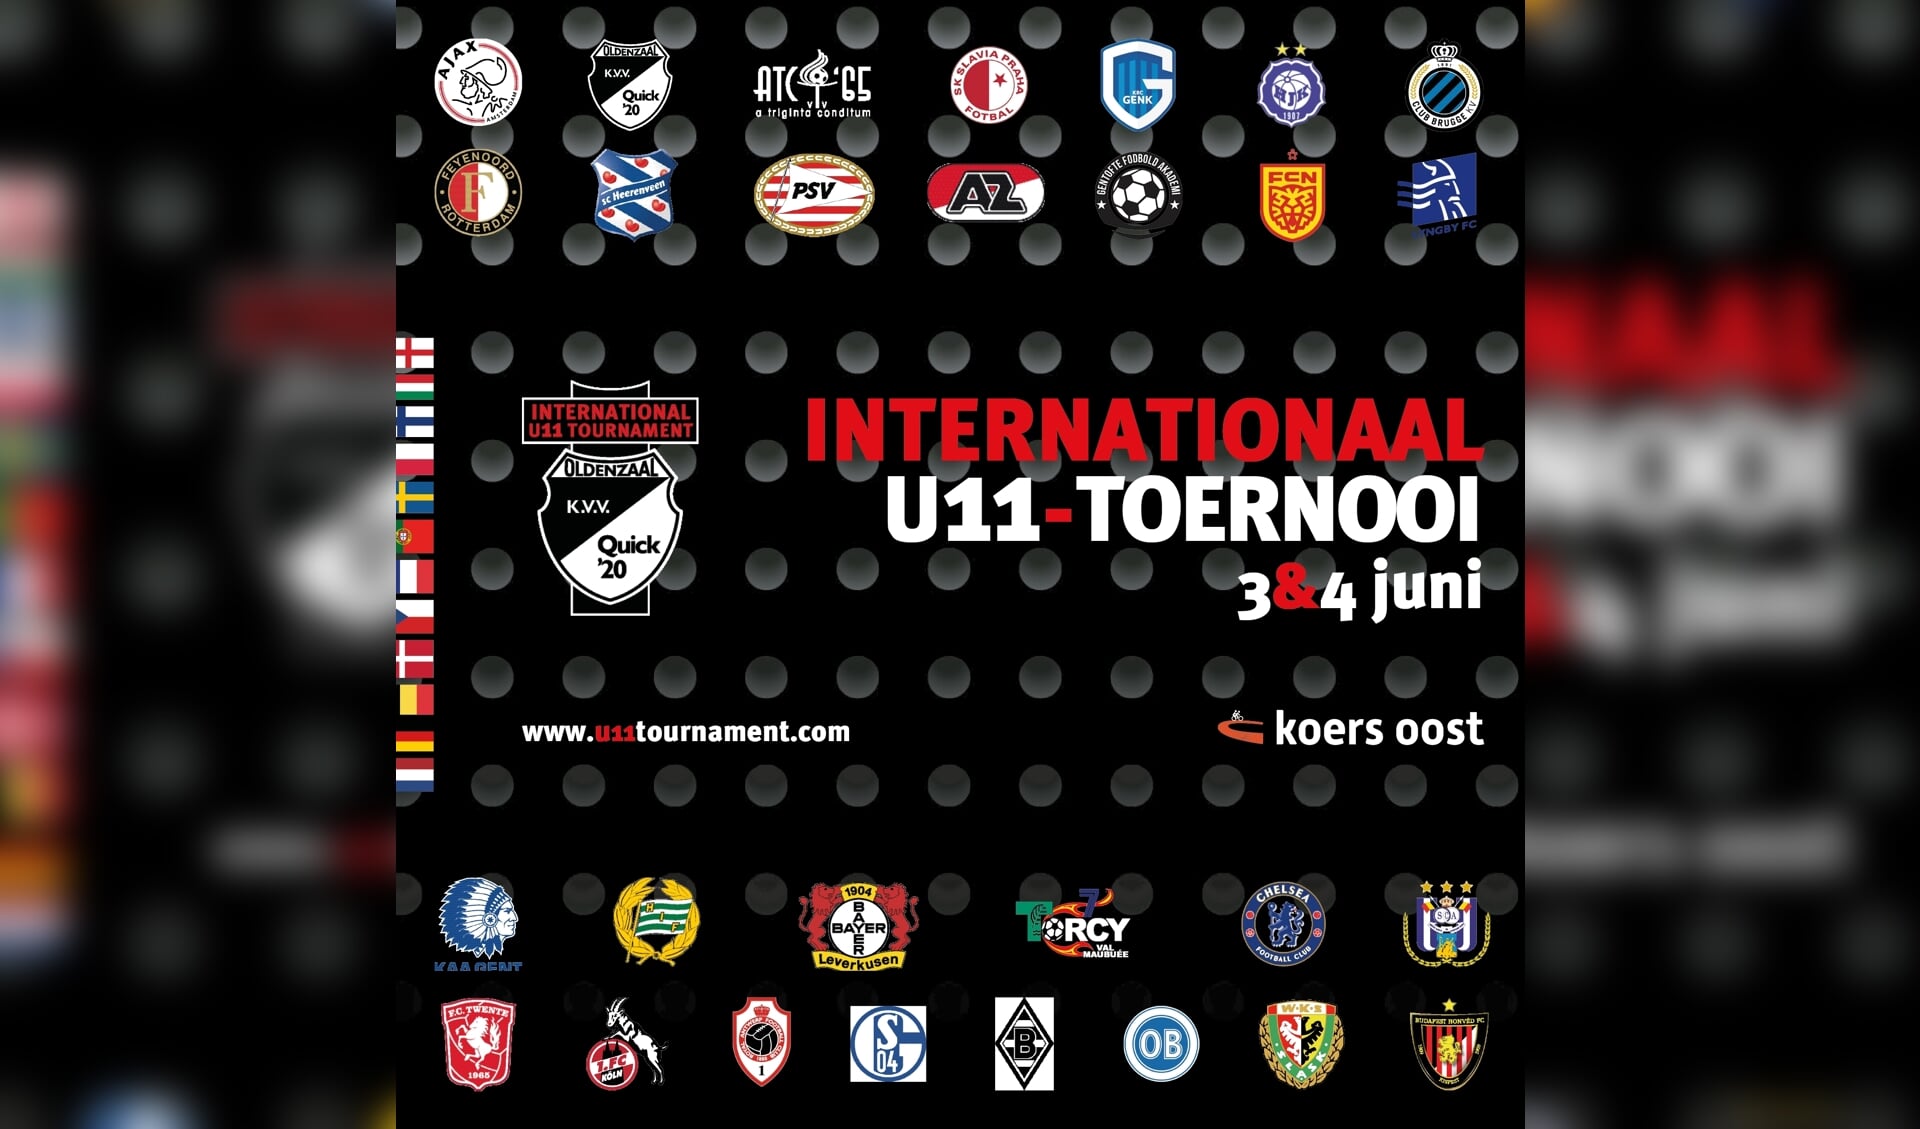 Voetbalclubs uit 11 landen doen mee aan het internationaal U11 toernooi.